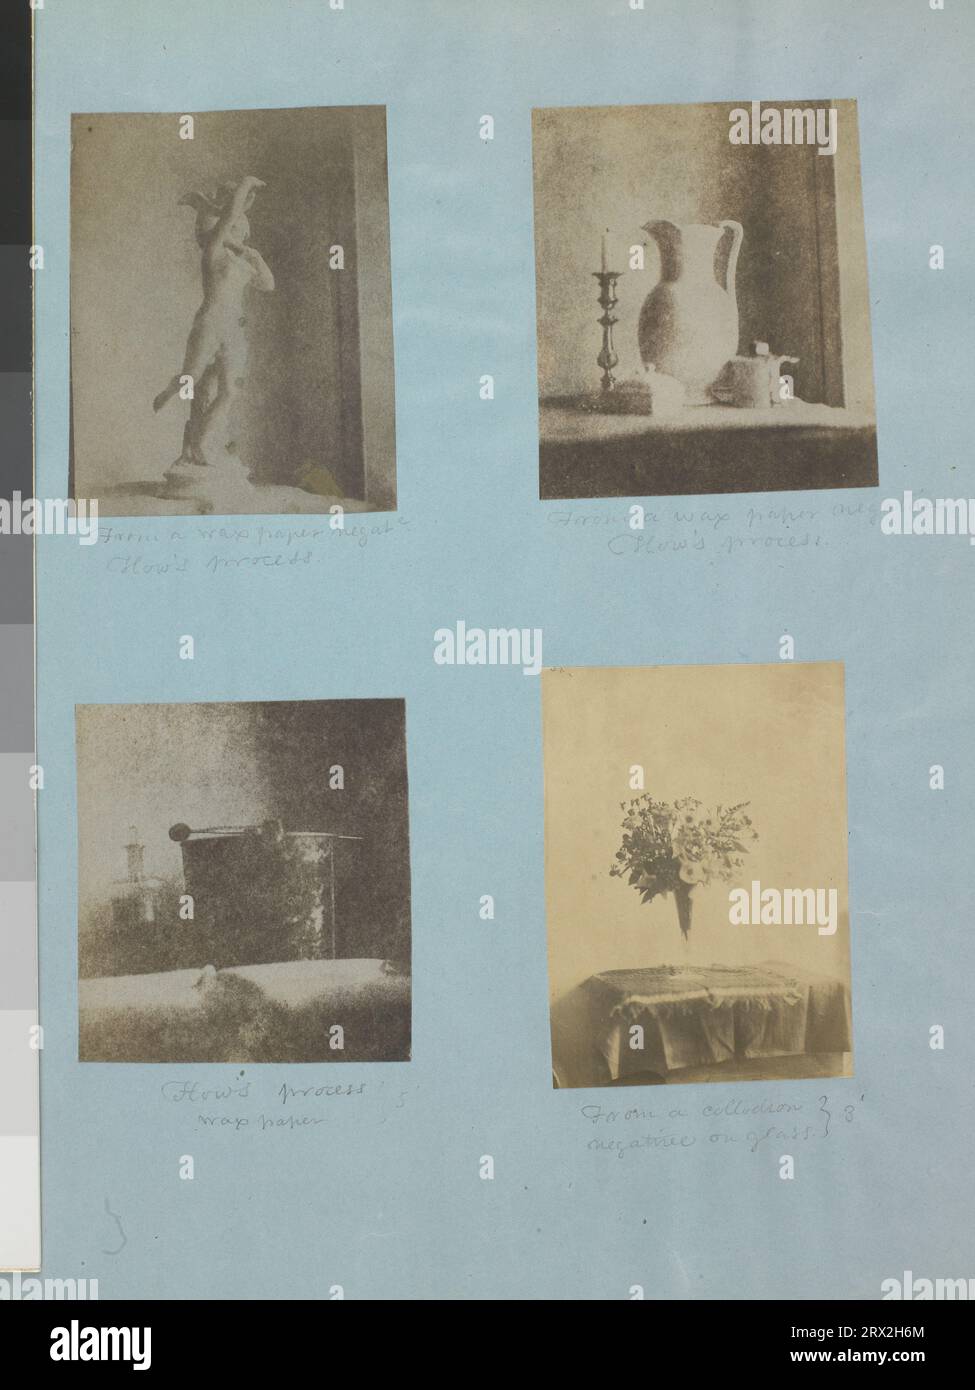 Stampe. Tiziano Ramsay Peale, anni '1850, immagini montate di nature morte, di una figura scultorea, di una brocca e candelabro, di un secchio e di un vaso di fiori. Peale album. PG*66.21.03, PG*66.21.04, PG*66.21.05, PG*66.21.06. Foto Stock